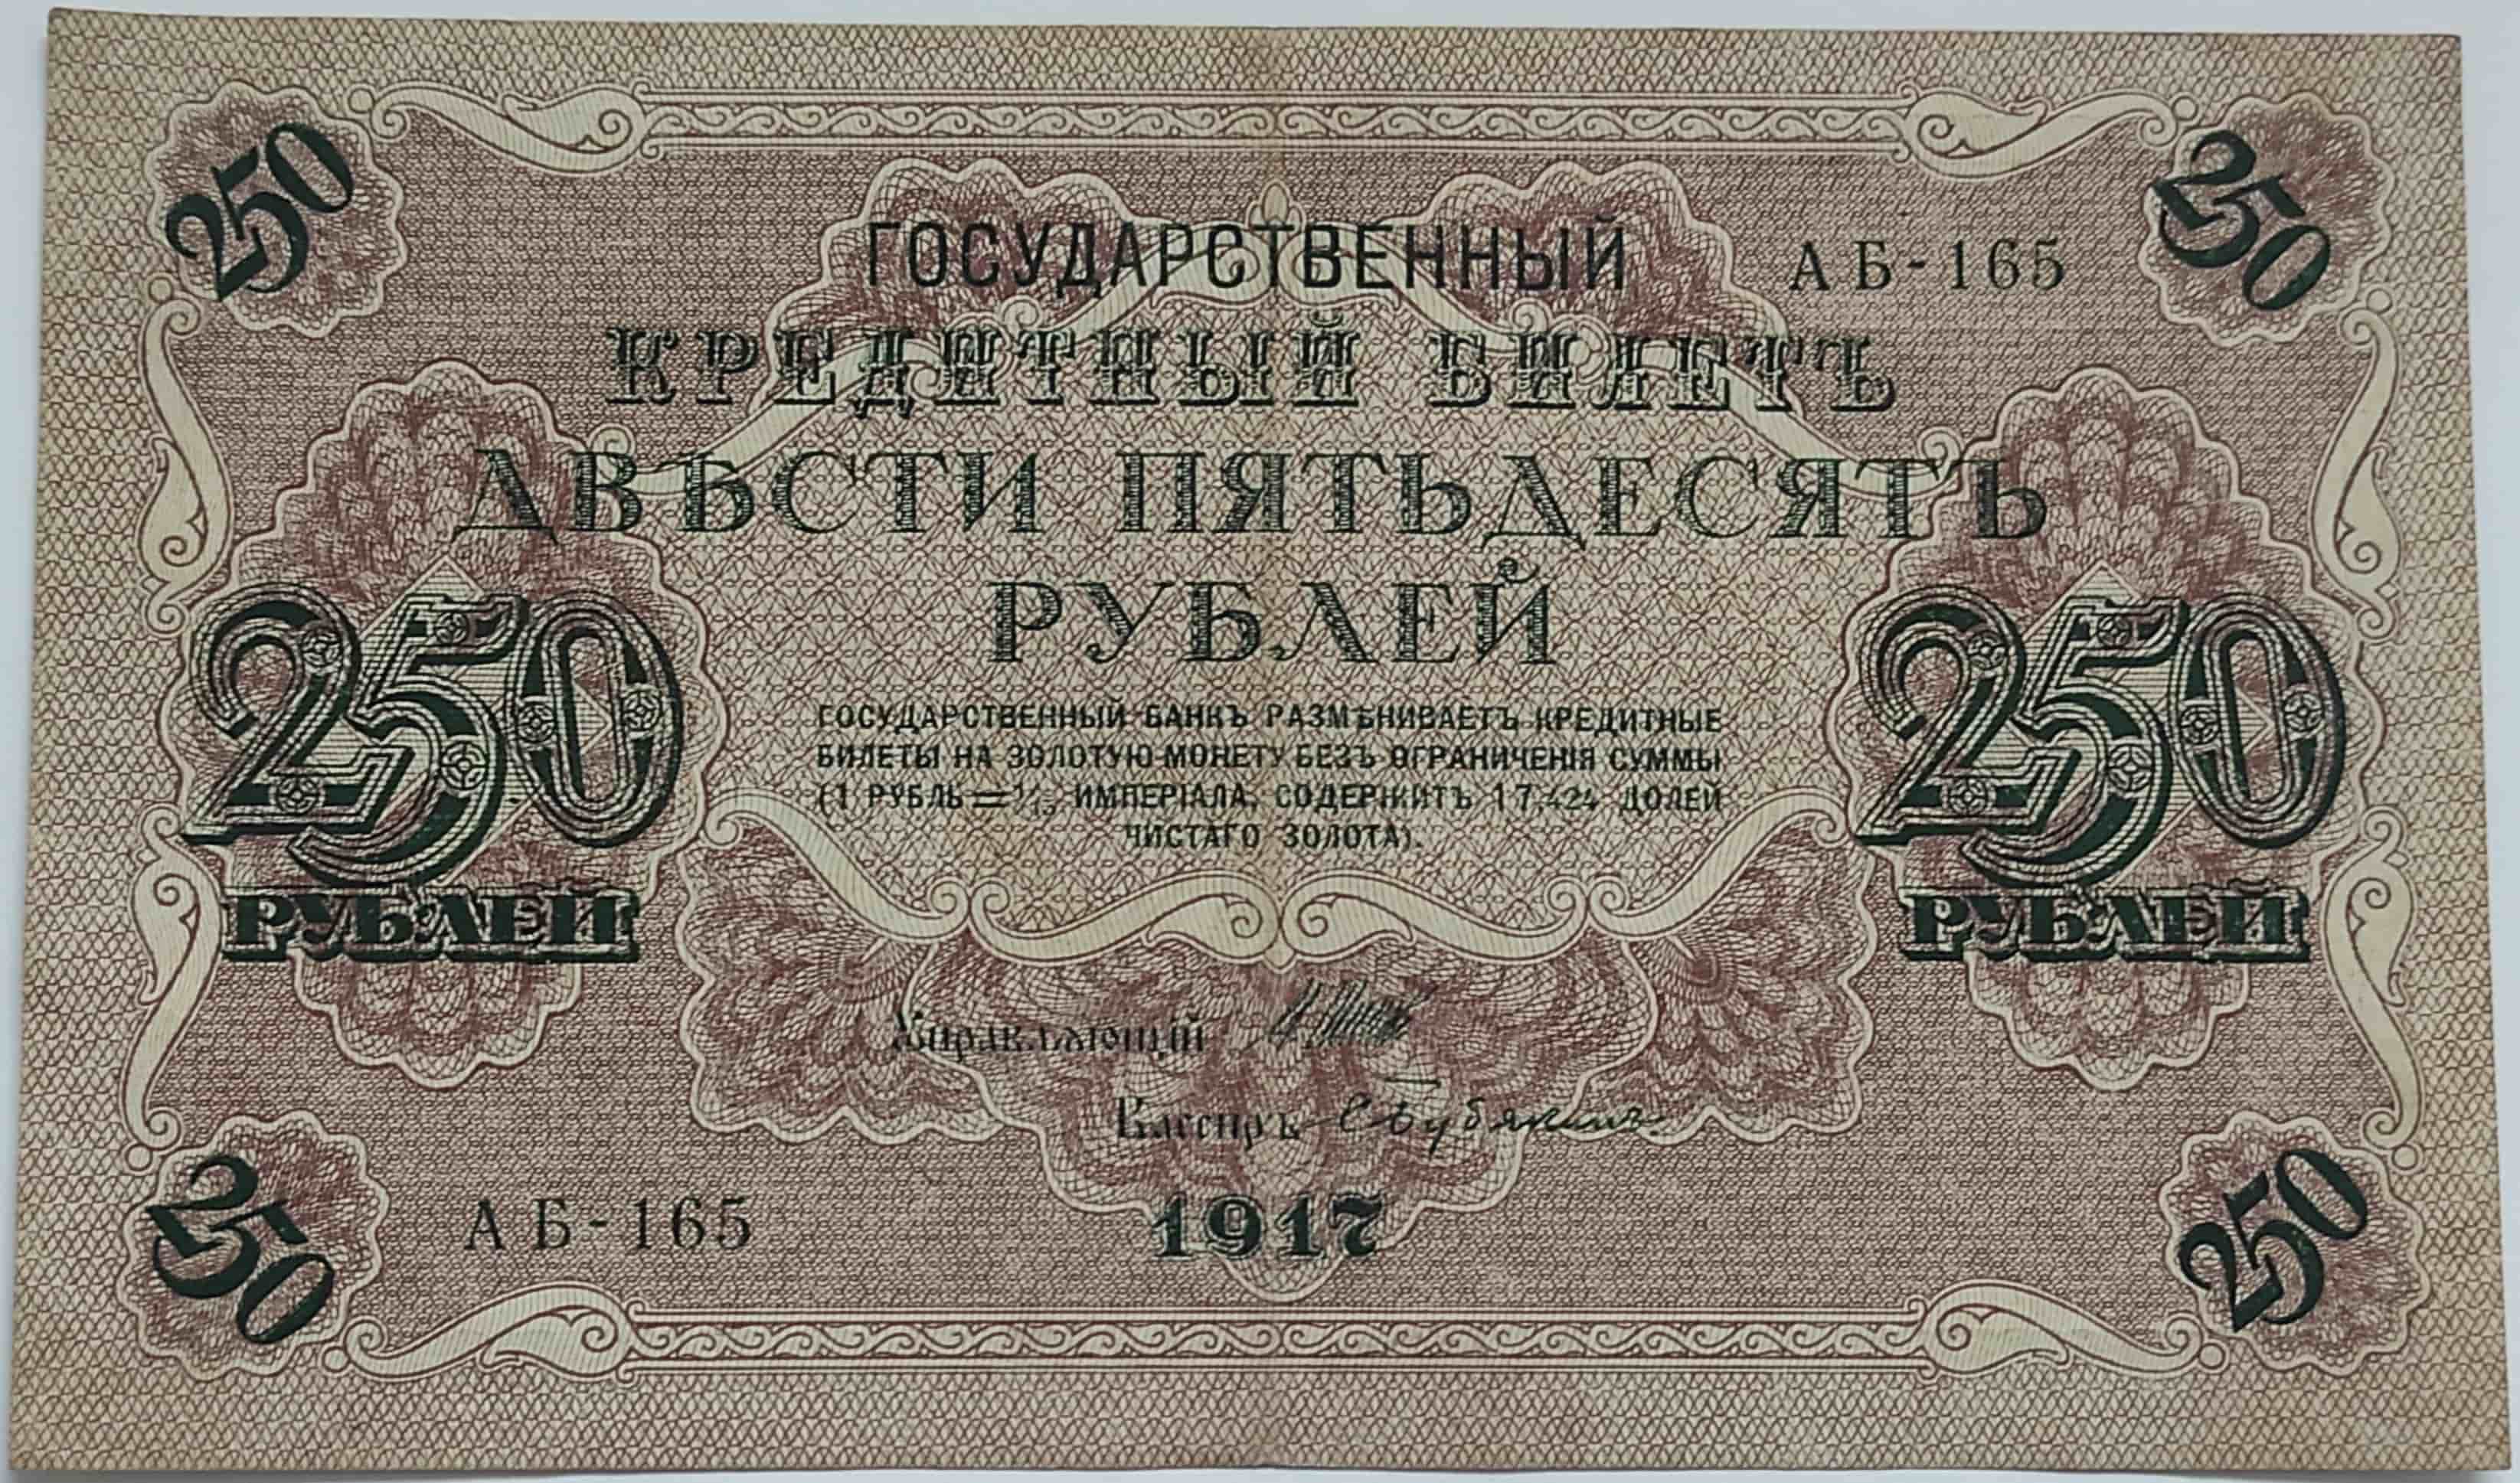 250 rubľov 1917